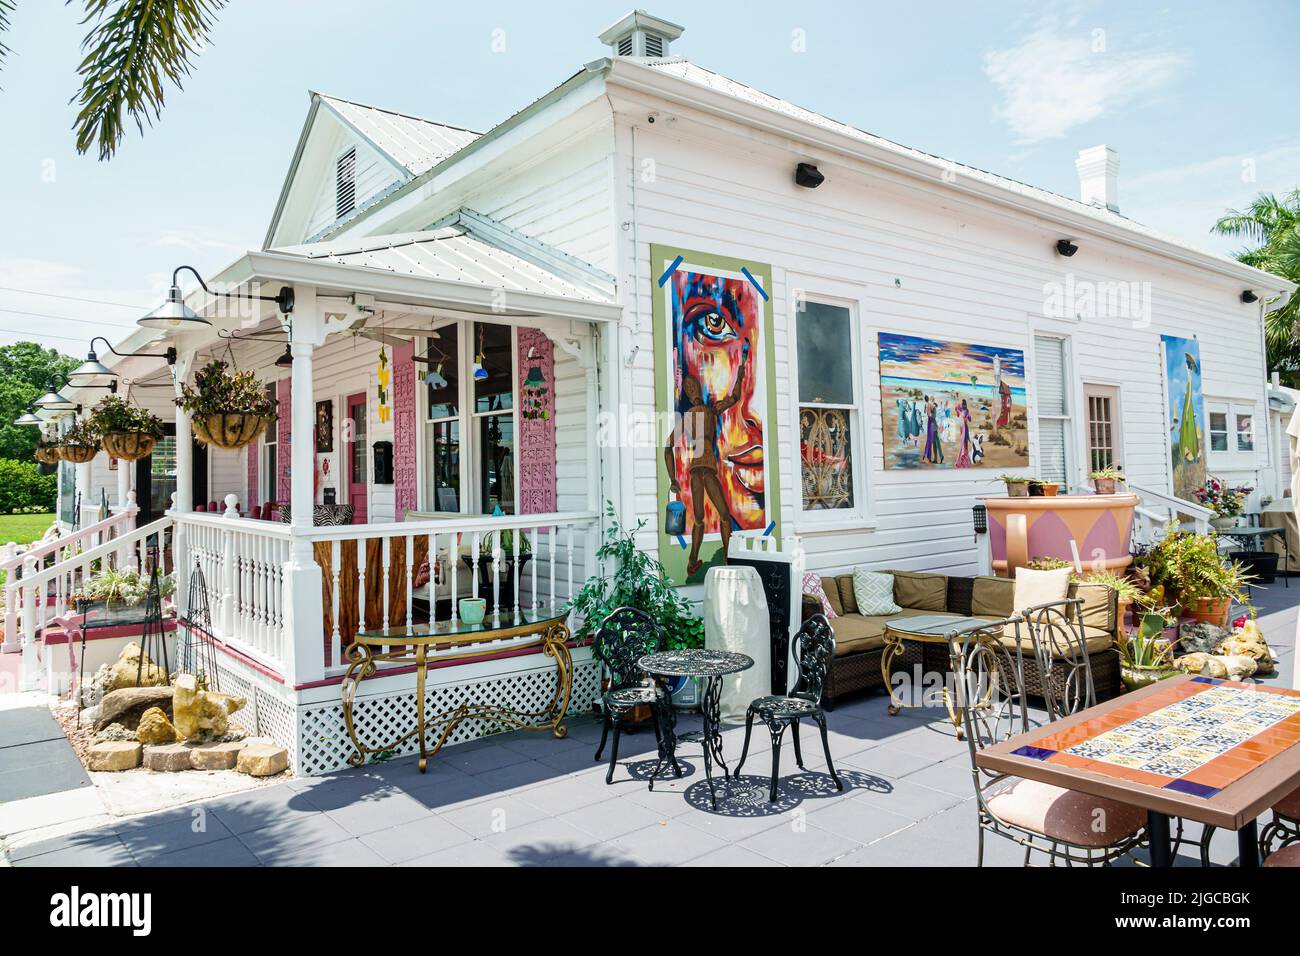 Punta Gorda Florida, Distrito Histórico cafetería sin filtrar, fuera porche de entrada frontal exterior casa reutilizada convertida en negocio Foto de stock